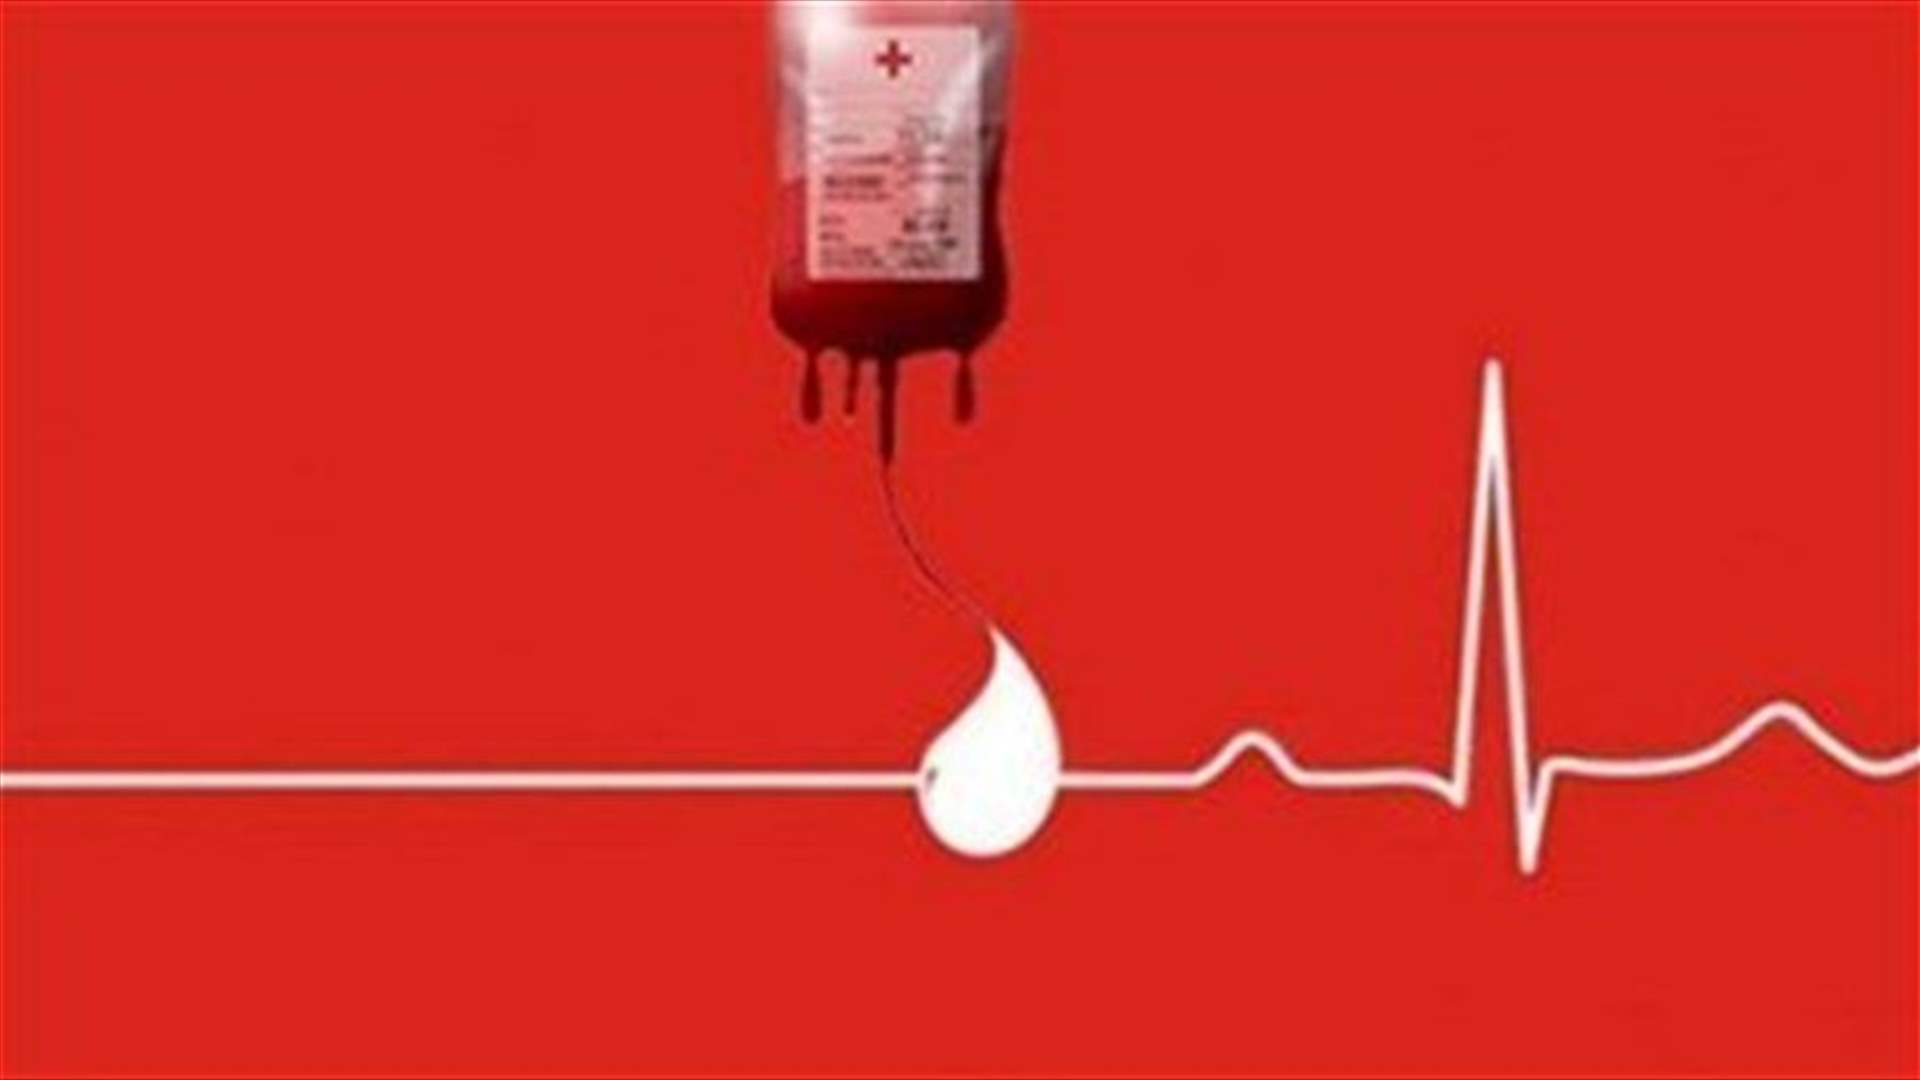 مريضة بحاجة ماسّة لوحدات دم من فئة A+ وO+ في مستشفى رزق الجامعي للتبرع الرجاء الاتصال على الرقم: 03636772